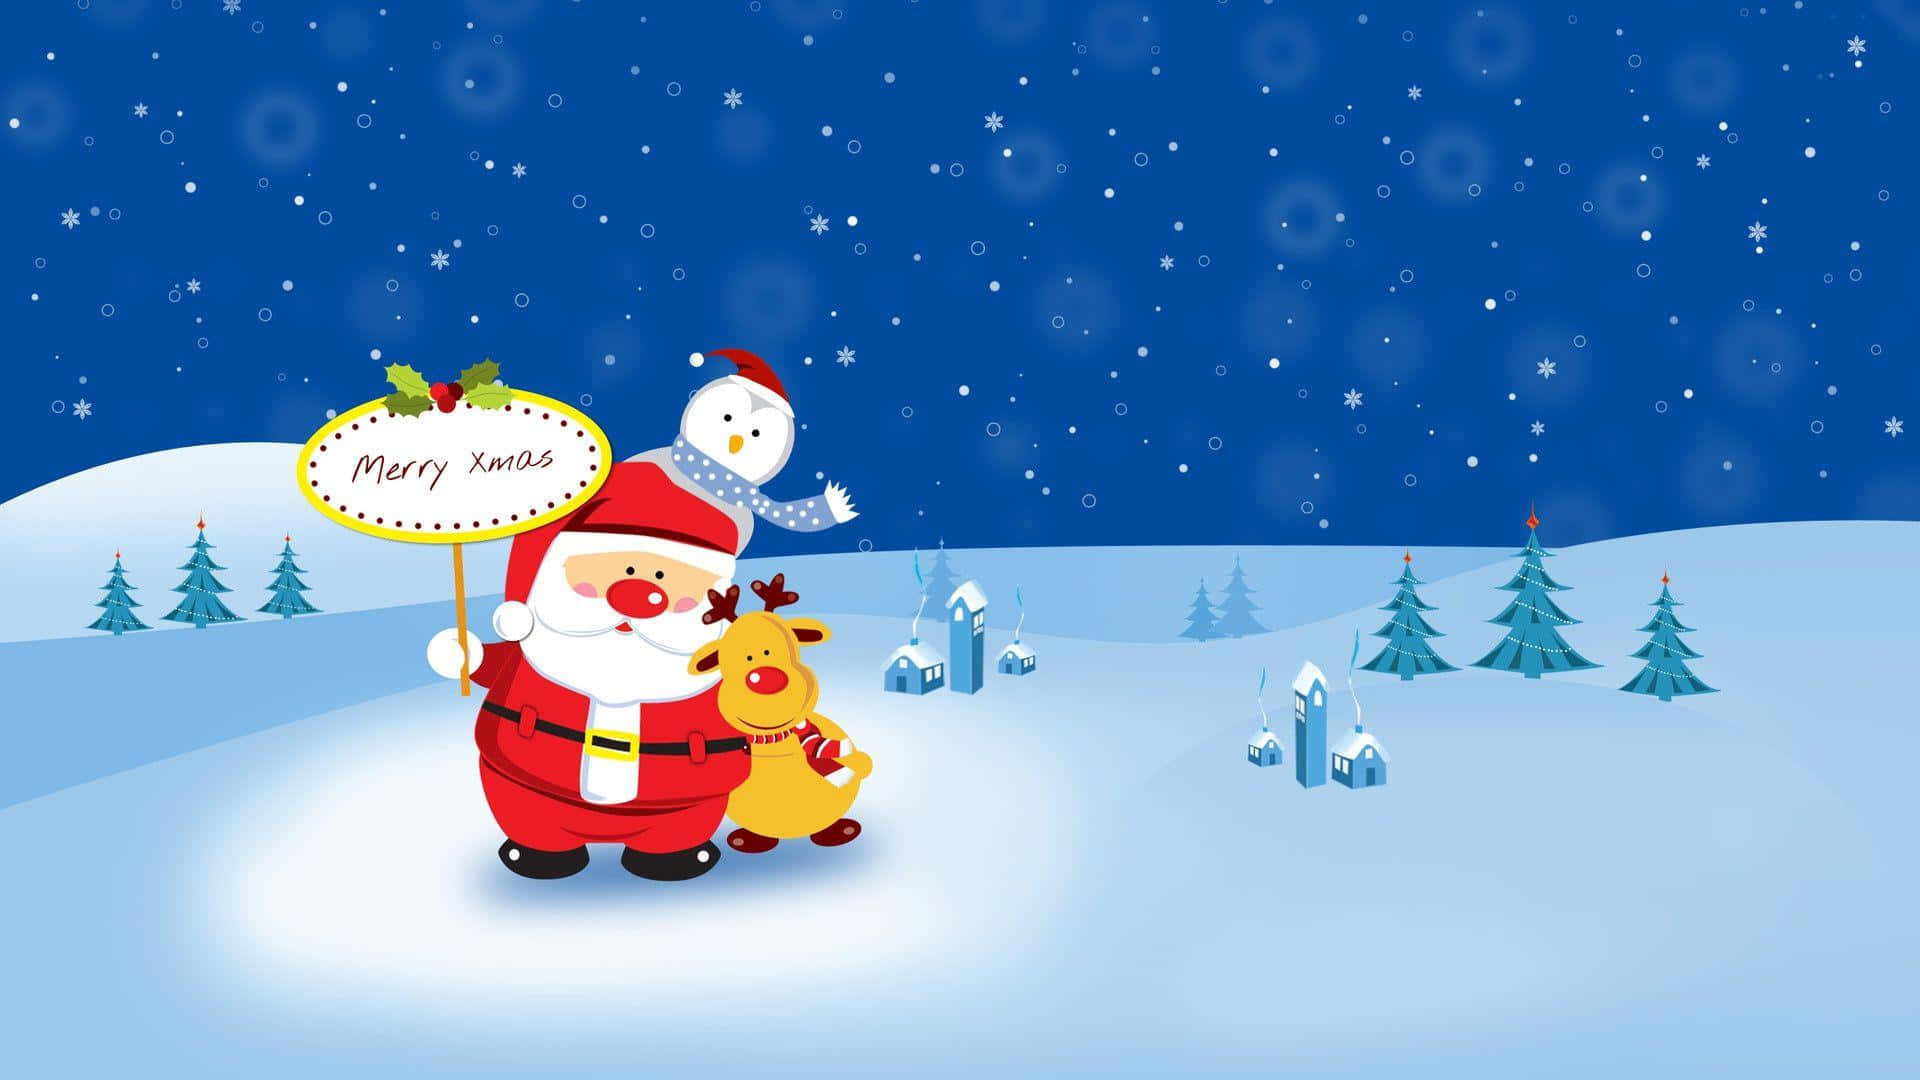 Imagende Navidad De Santa Claus, Renos Y Pingüinos En Estilo De Dibujos Animados